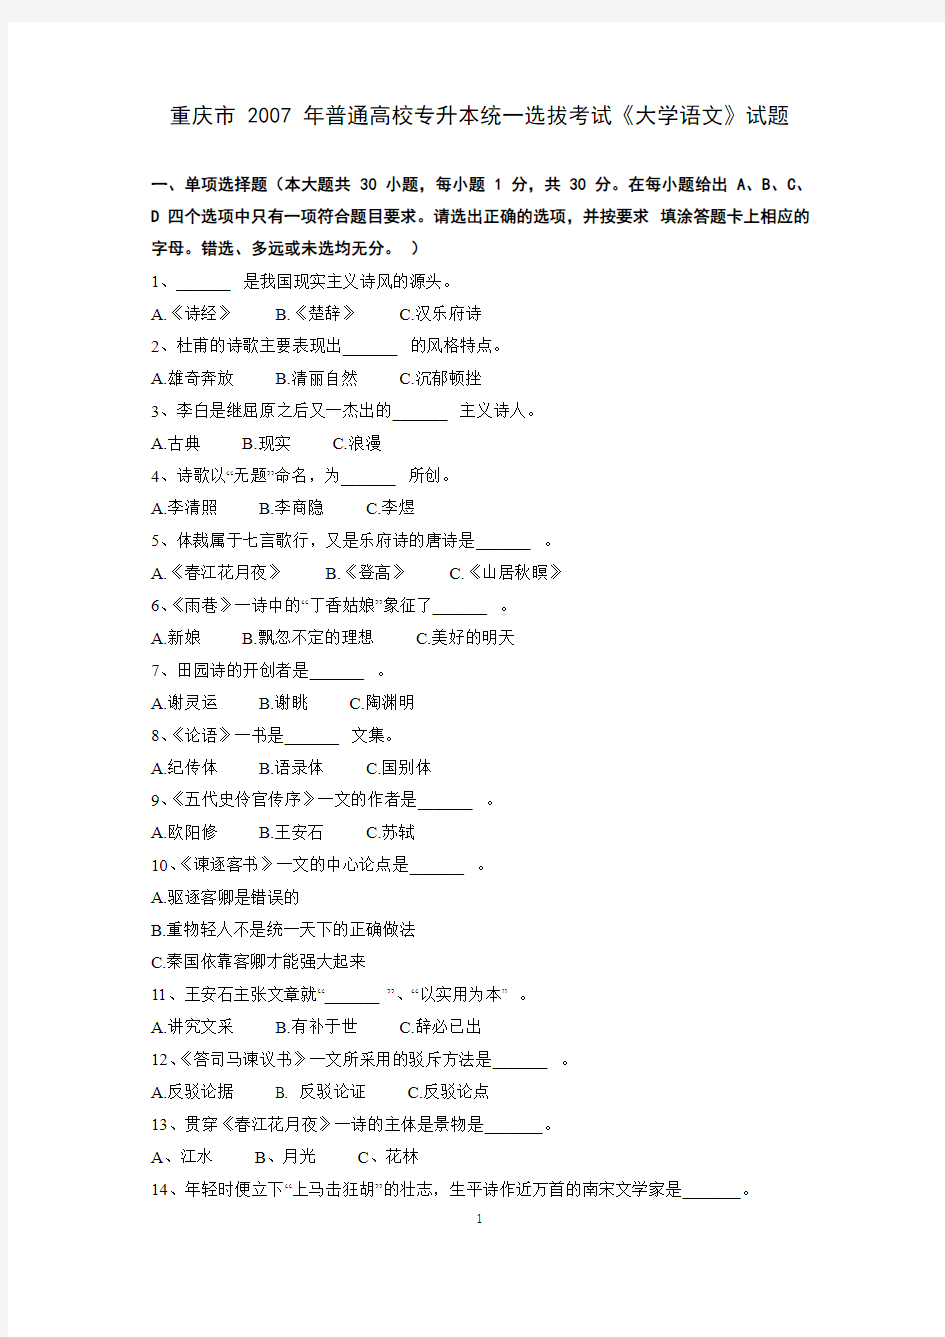 重庆市 2007 年普通高校专升本统一选拔考试《大学语文》试题